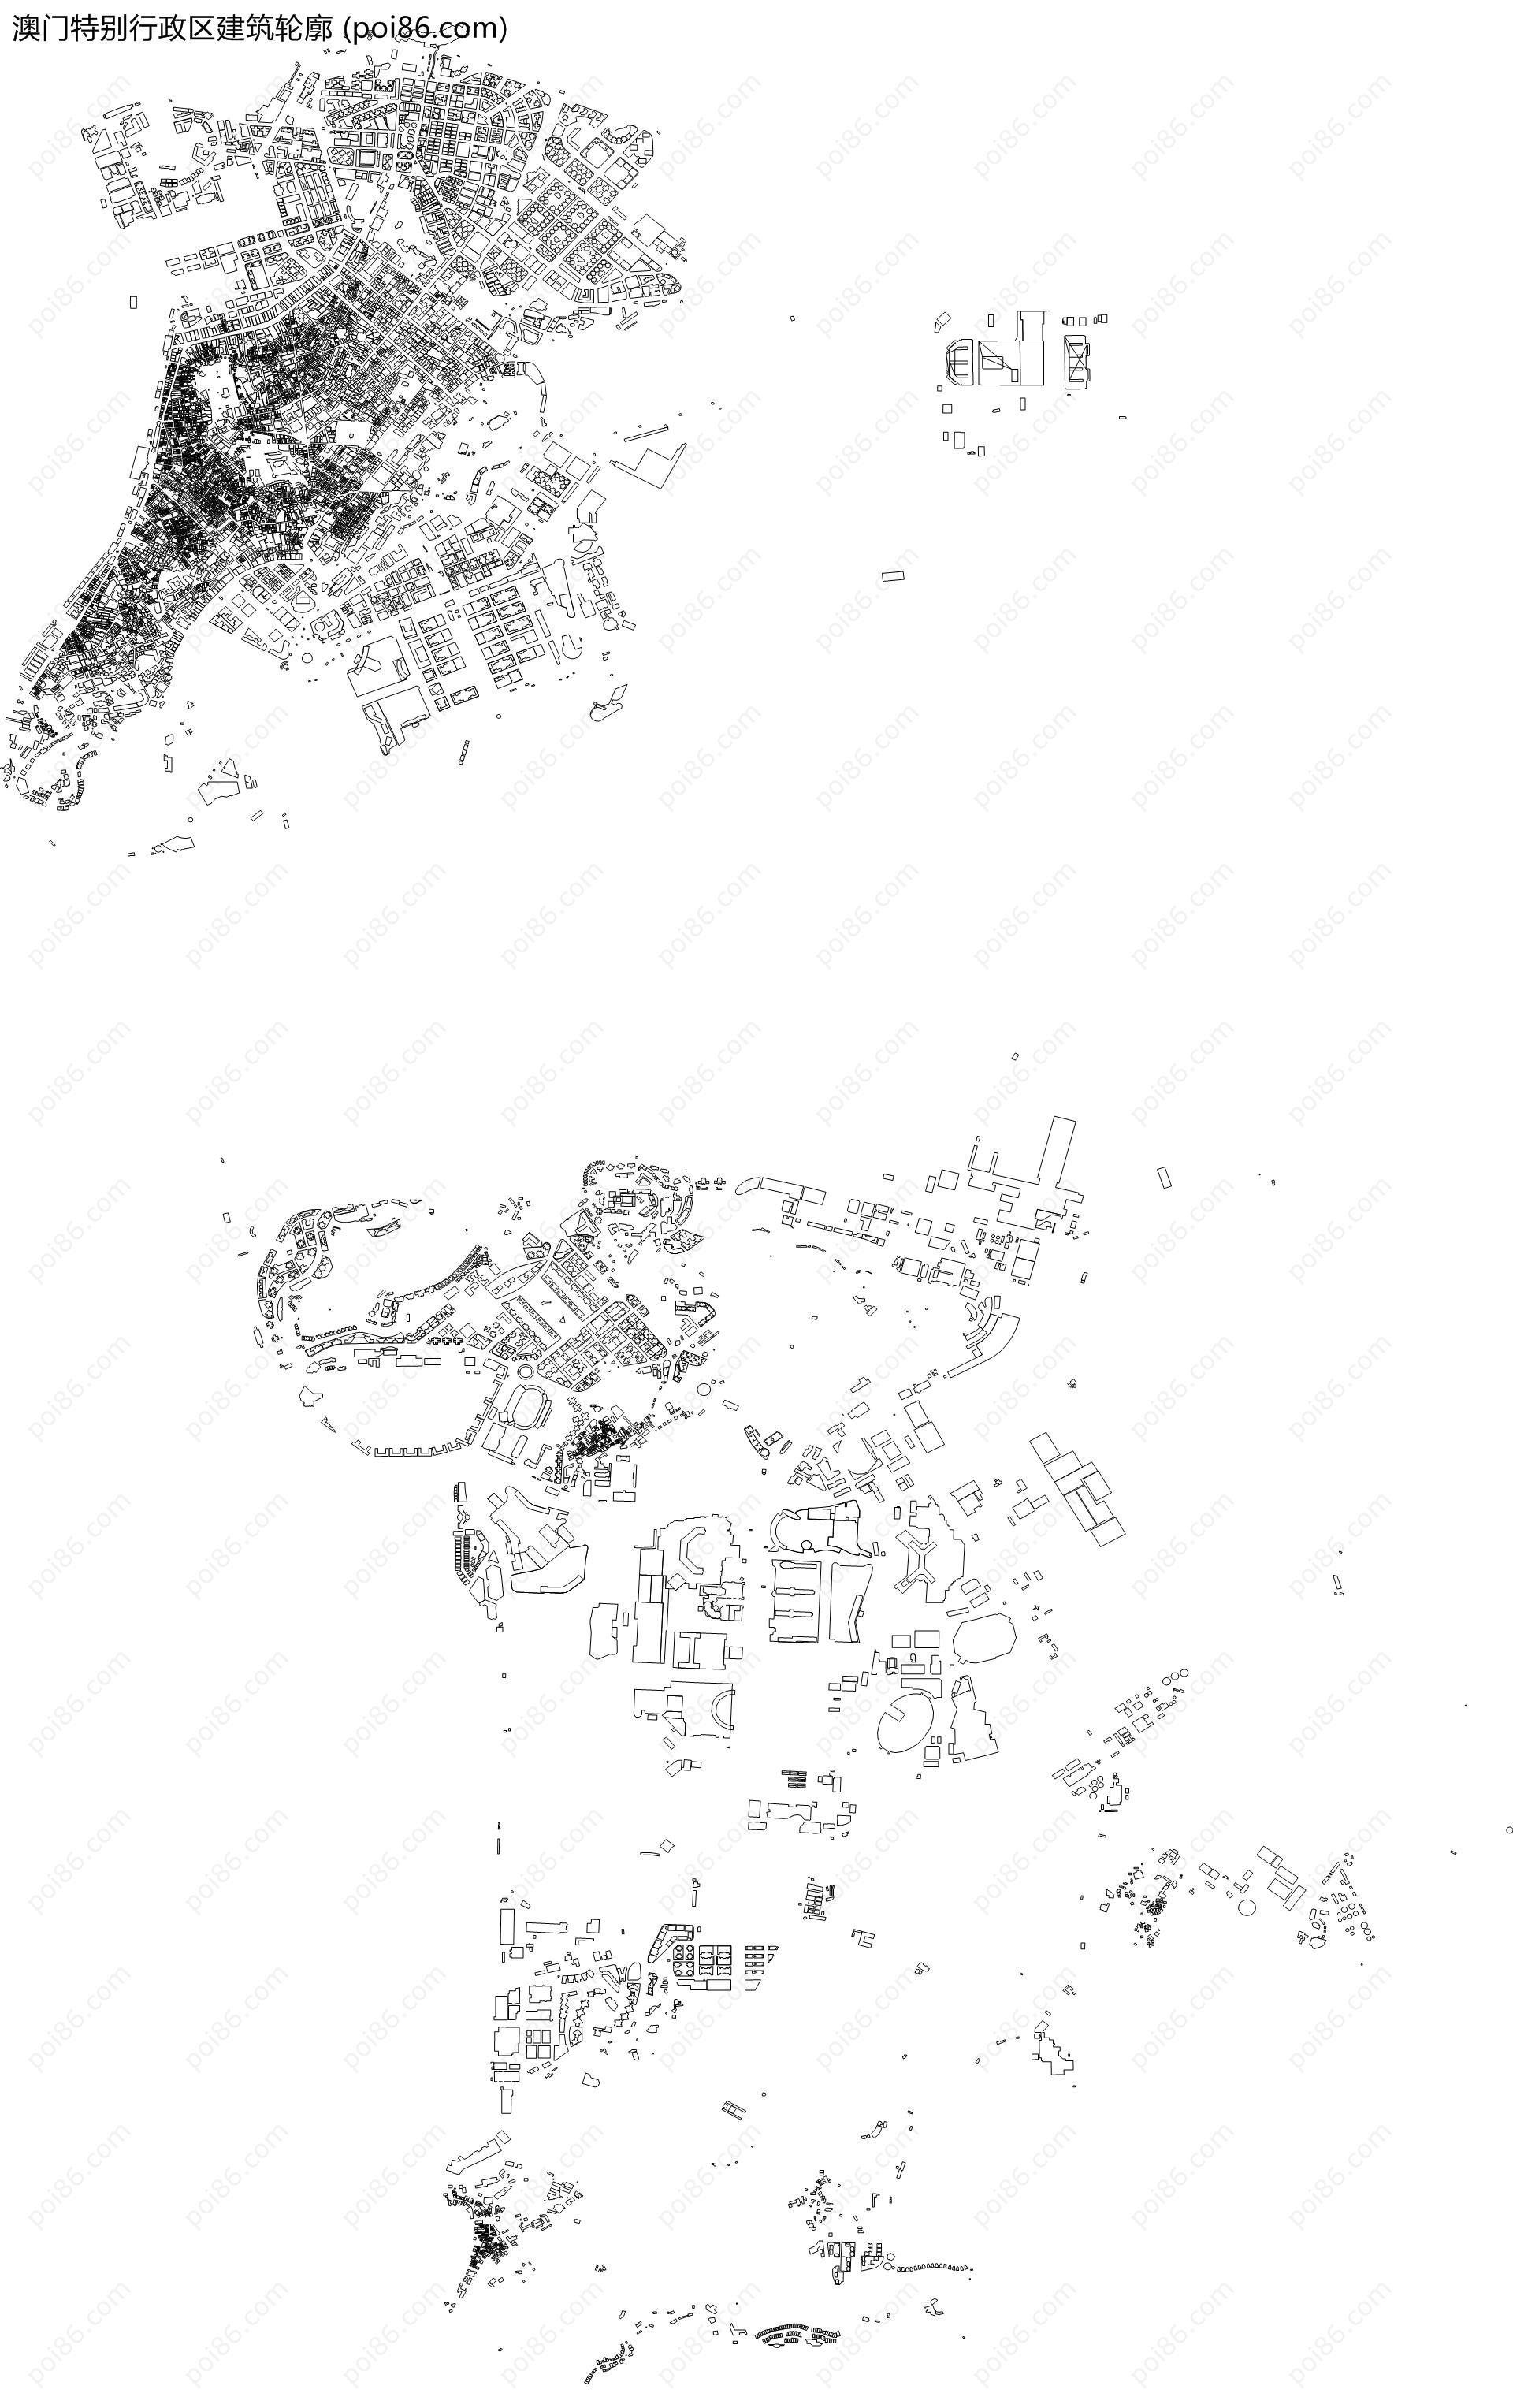 澳门特别行政区建筑轮廓地图